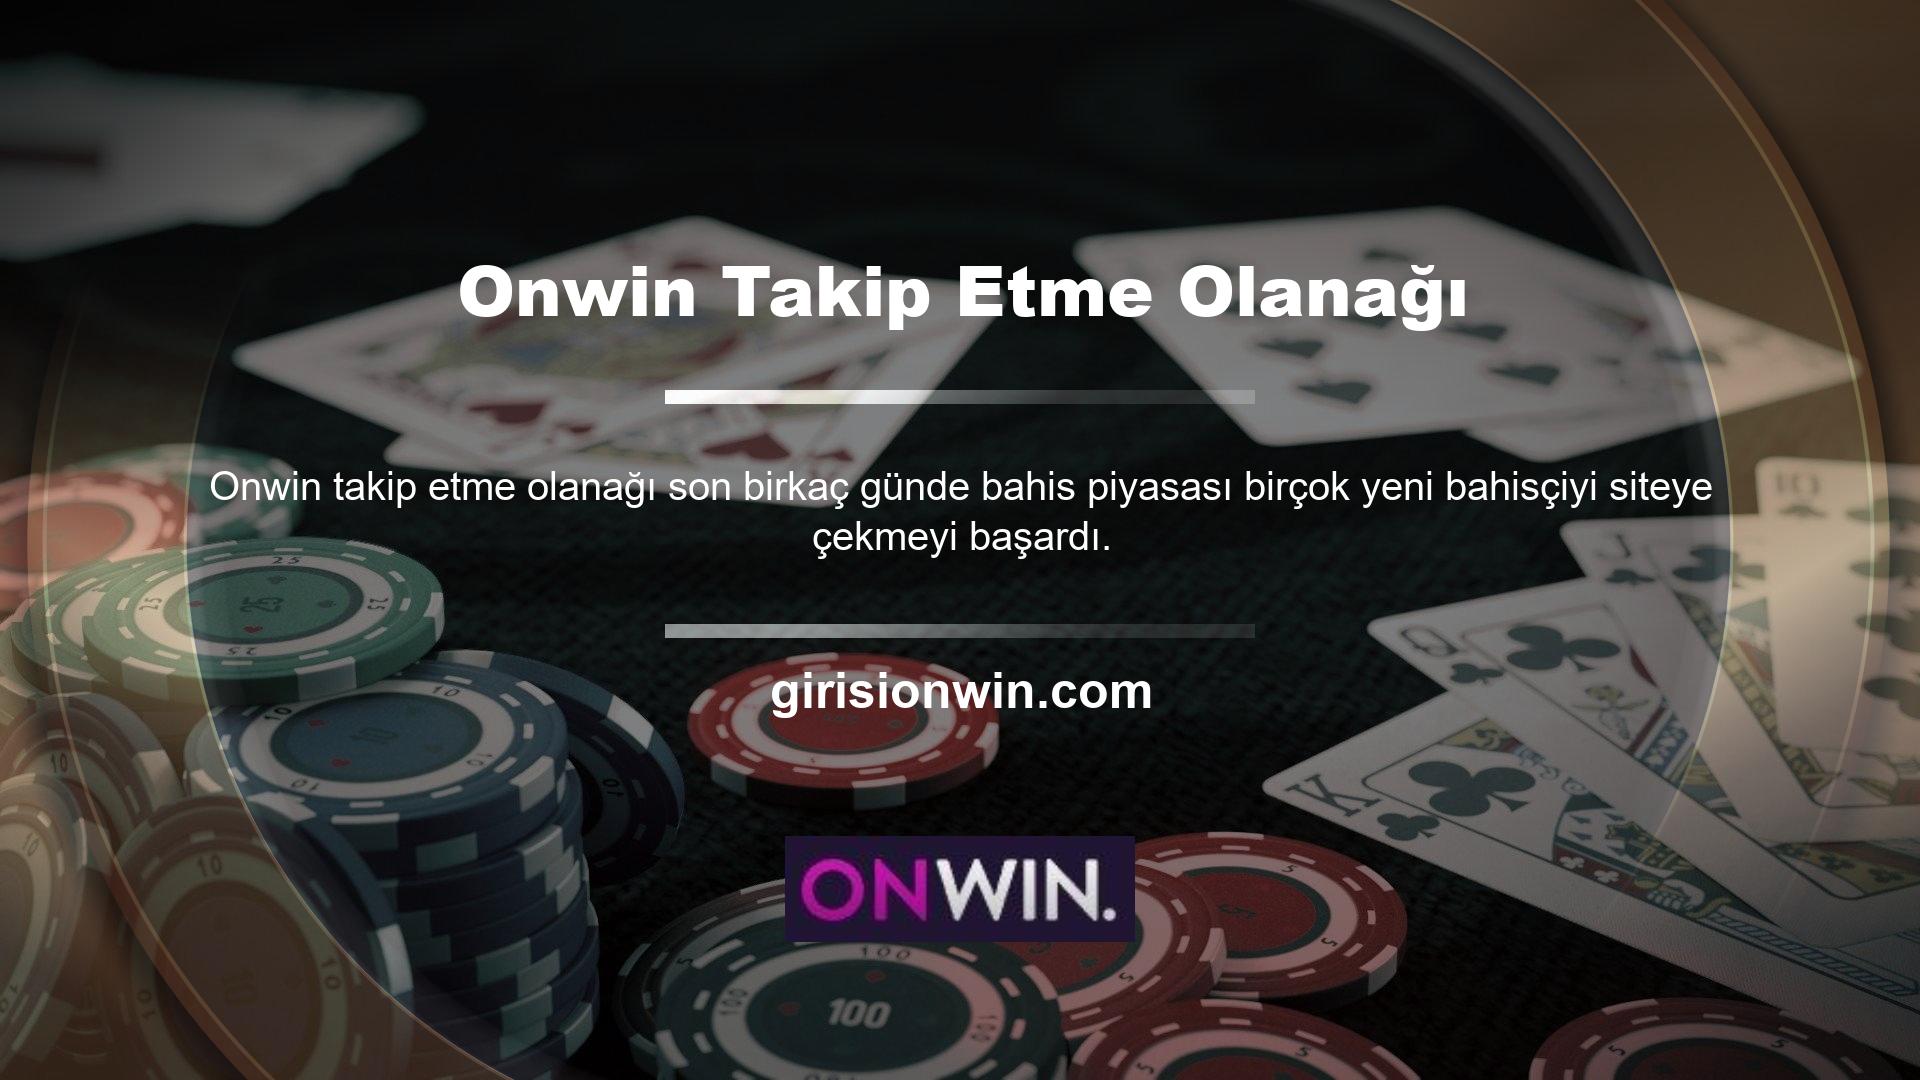 Ayrıca oyun sitesi Onwin, sitedeki reklamlardan elde ettiği geliri de artırdı